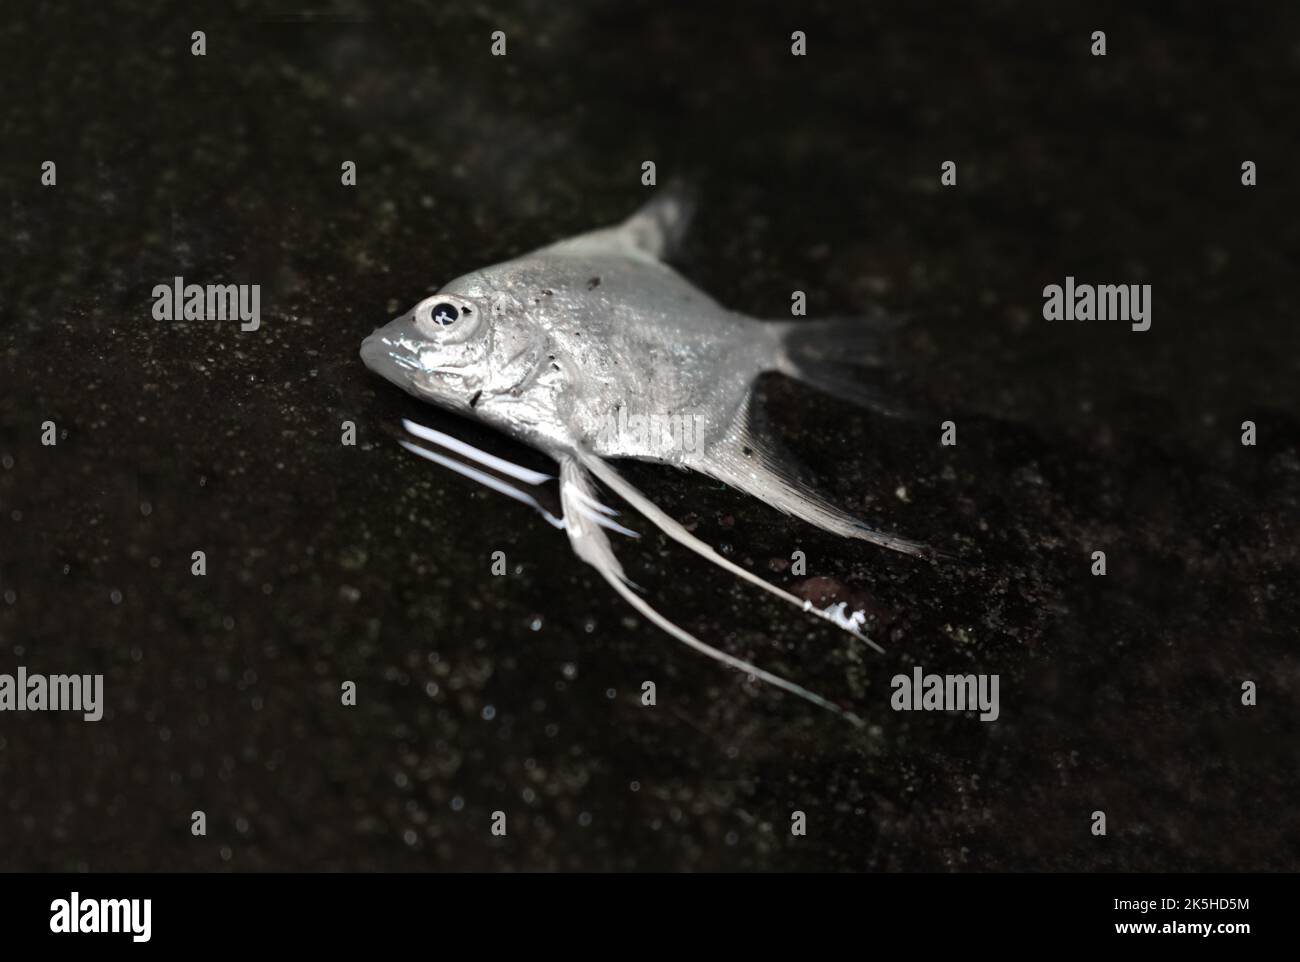 Ausgewachsene Angel-Aquarienfische starben aufgrund schlechter Wasserqualität. Tiermissbrauch. Stockfoto